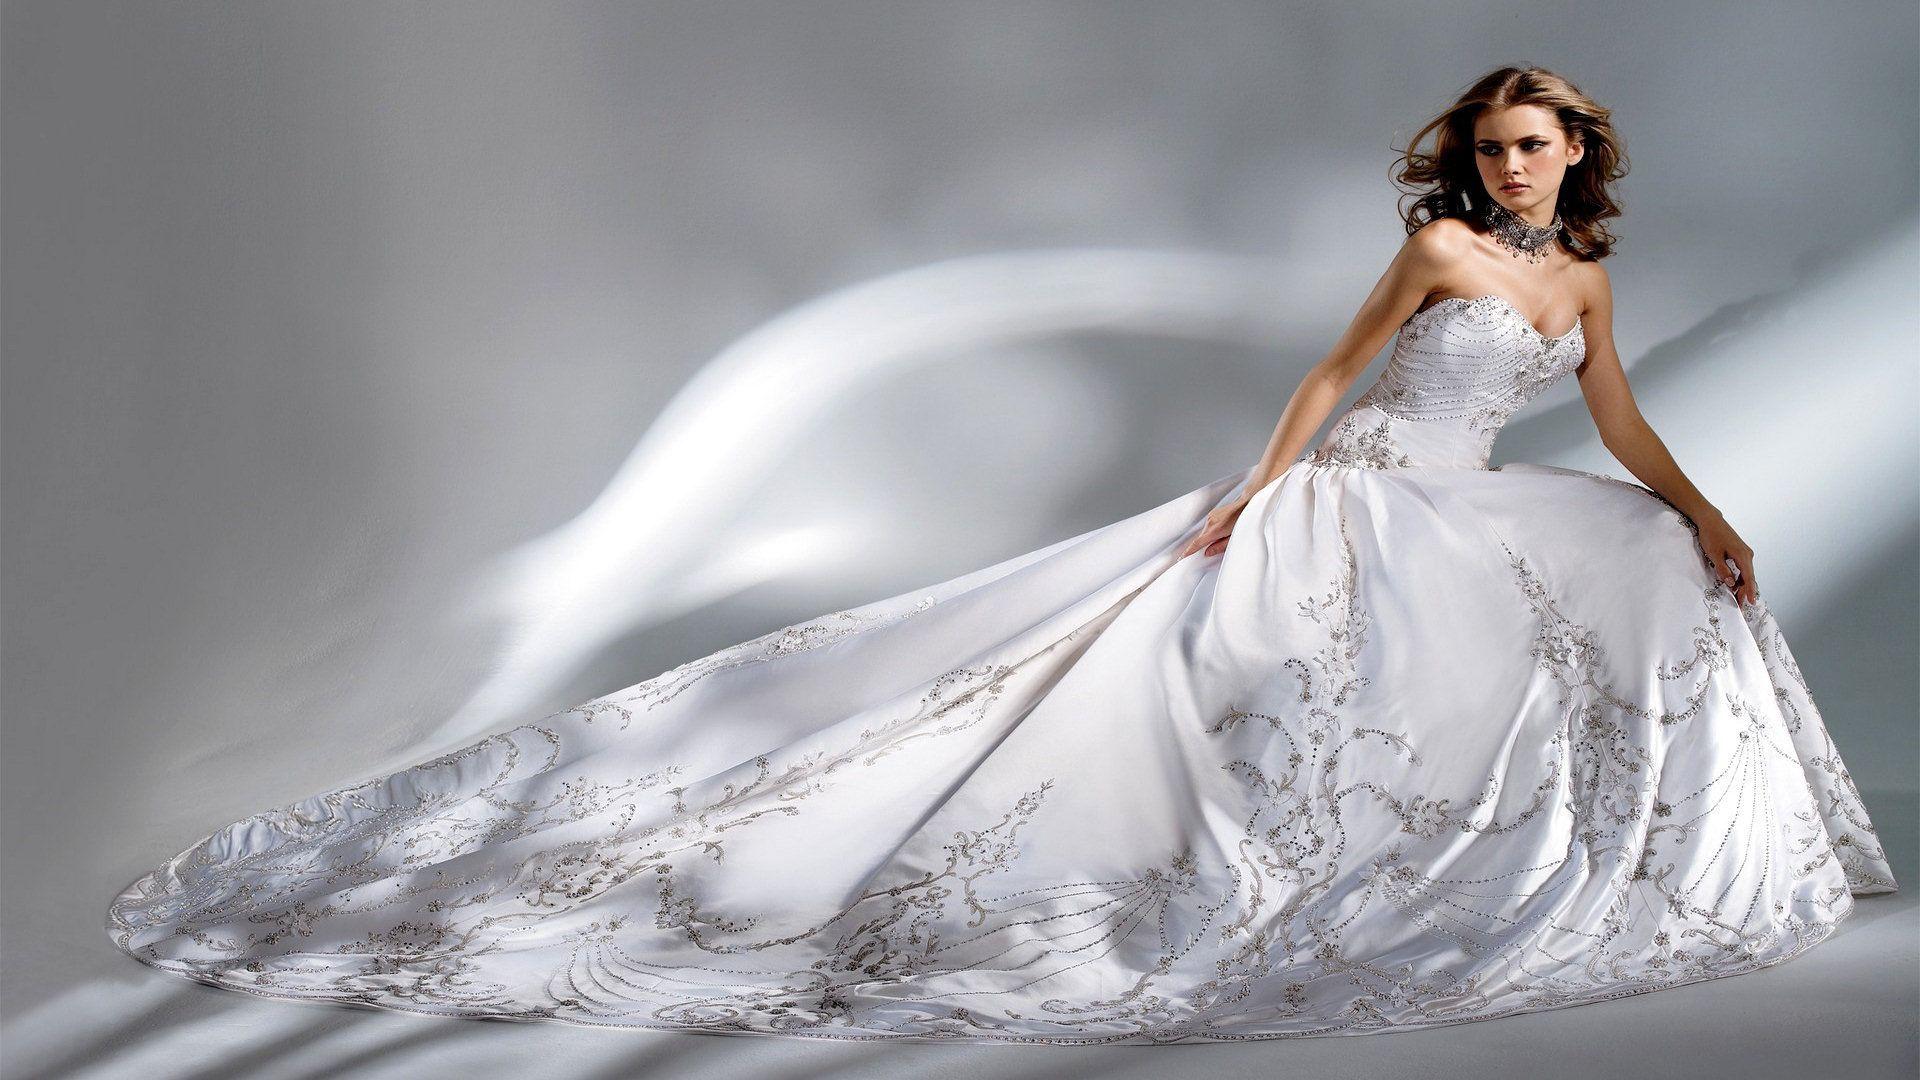 Bạn đang tìm kiếm một chiếc váy cưới thật đẹp để tỏa sáng trong ngày trọng đại của mình? Hãy xem ngay bức ảnh liên quan đến từ khóa \